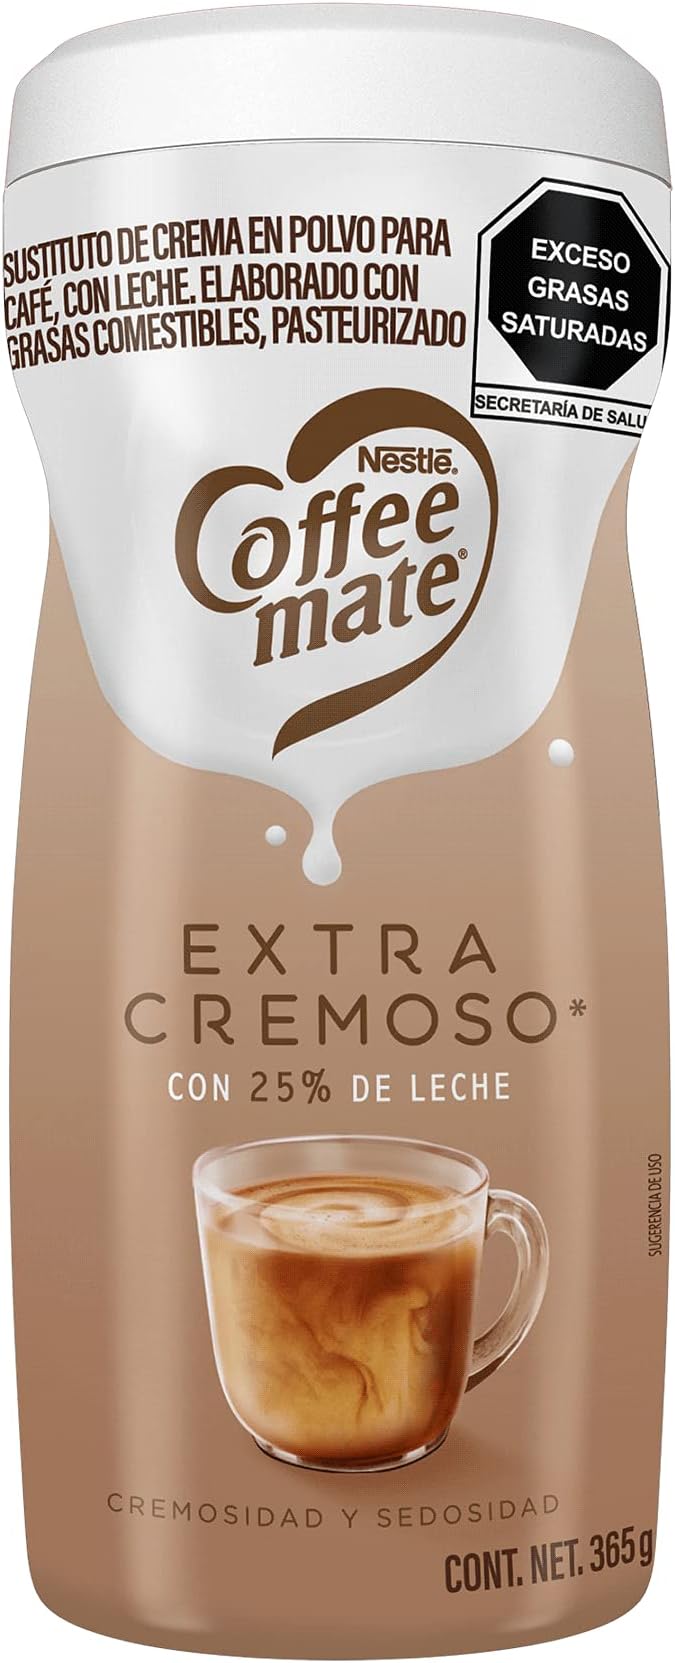 Sustituto de crema coffe matte original  El sustituto de crema para café, más delicioso y cremoso con una nueva fórmula original. compruébalo tú mismo y no dejes de probarlo!                                                                                                                           bote 1.2 kg                              - 7794